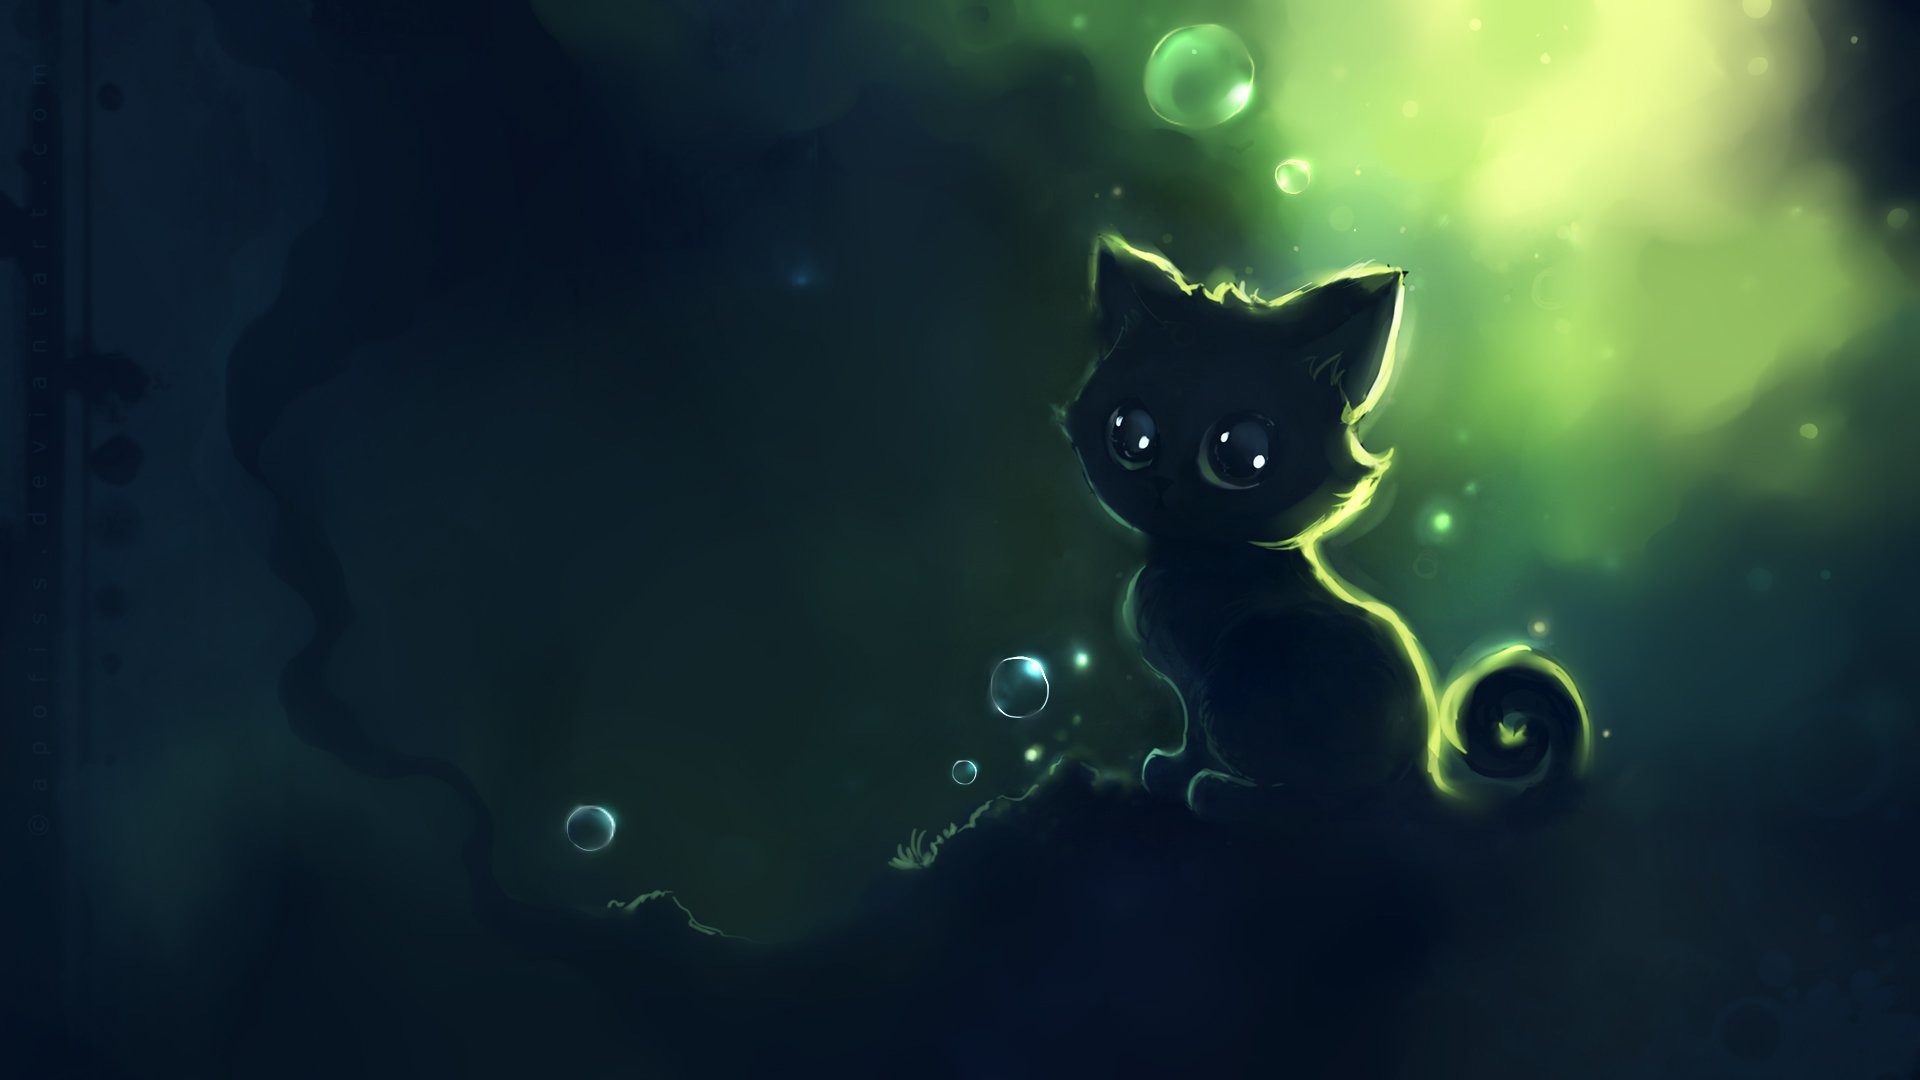 Apofiss 작은 검은 고양이 벽지 수채화 삽화 #7 - 1920x1080